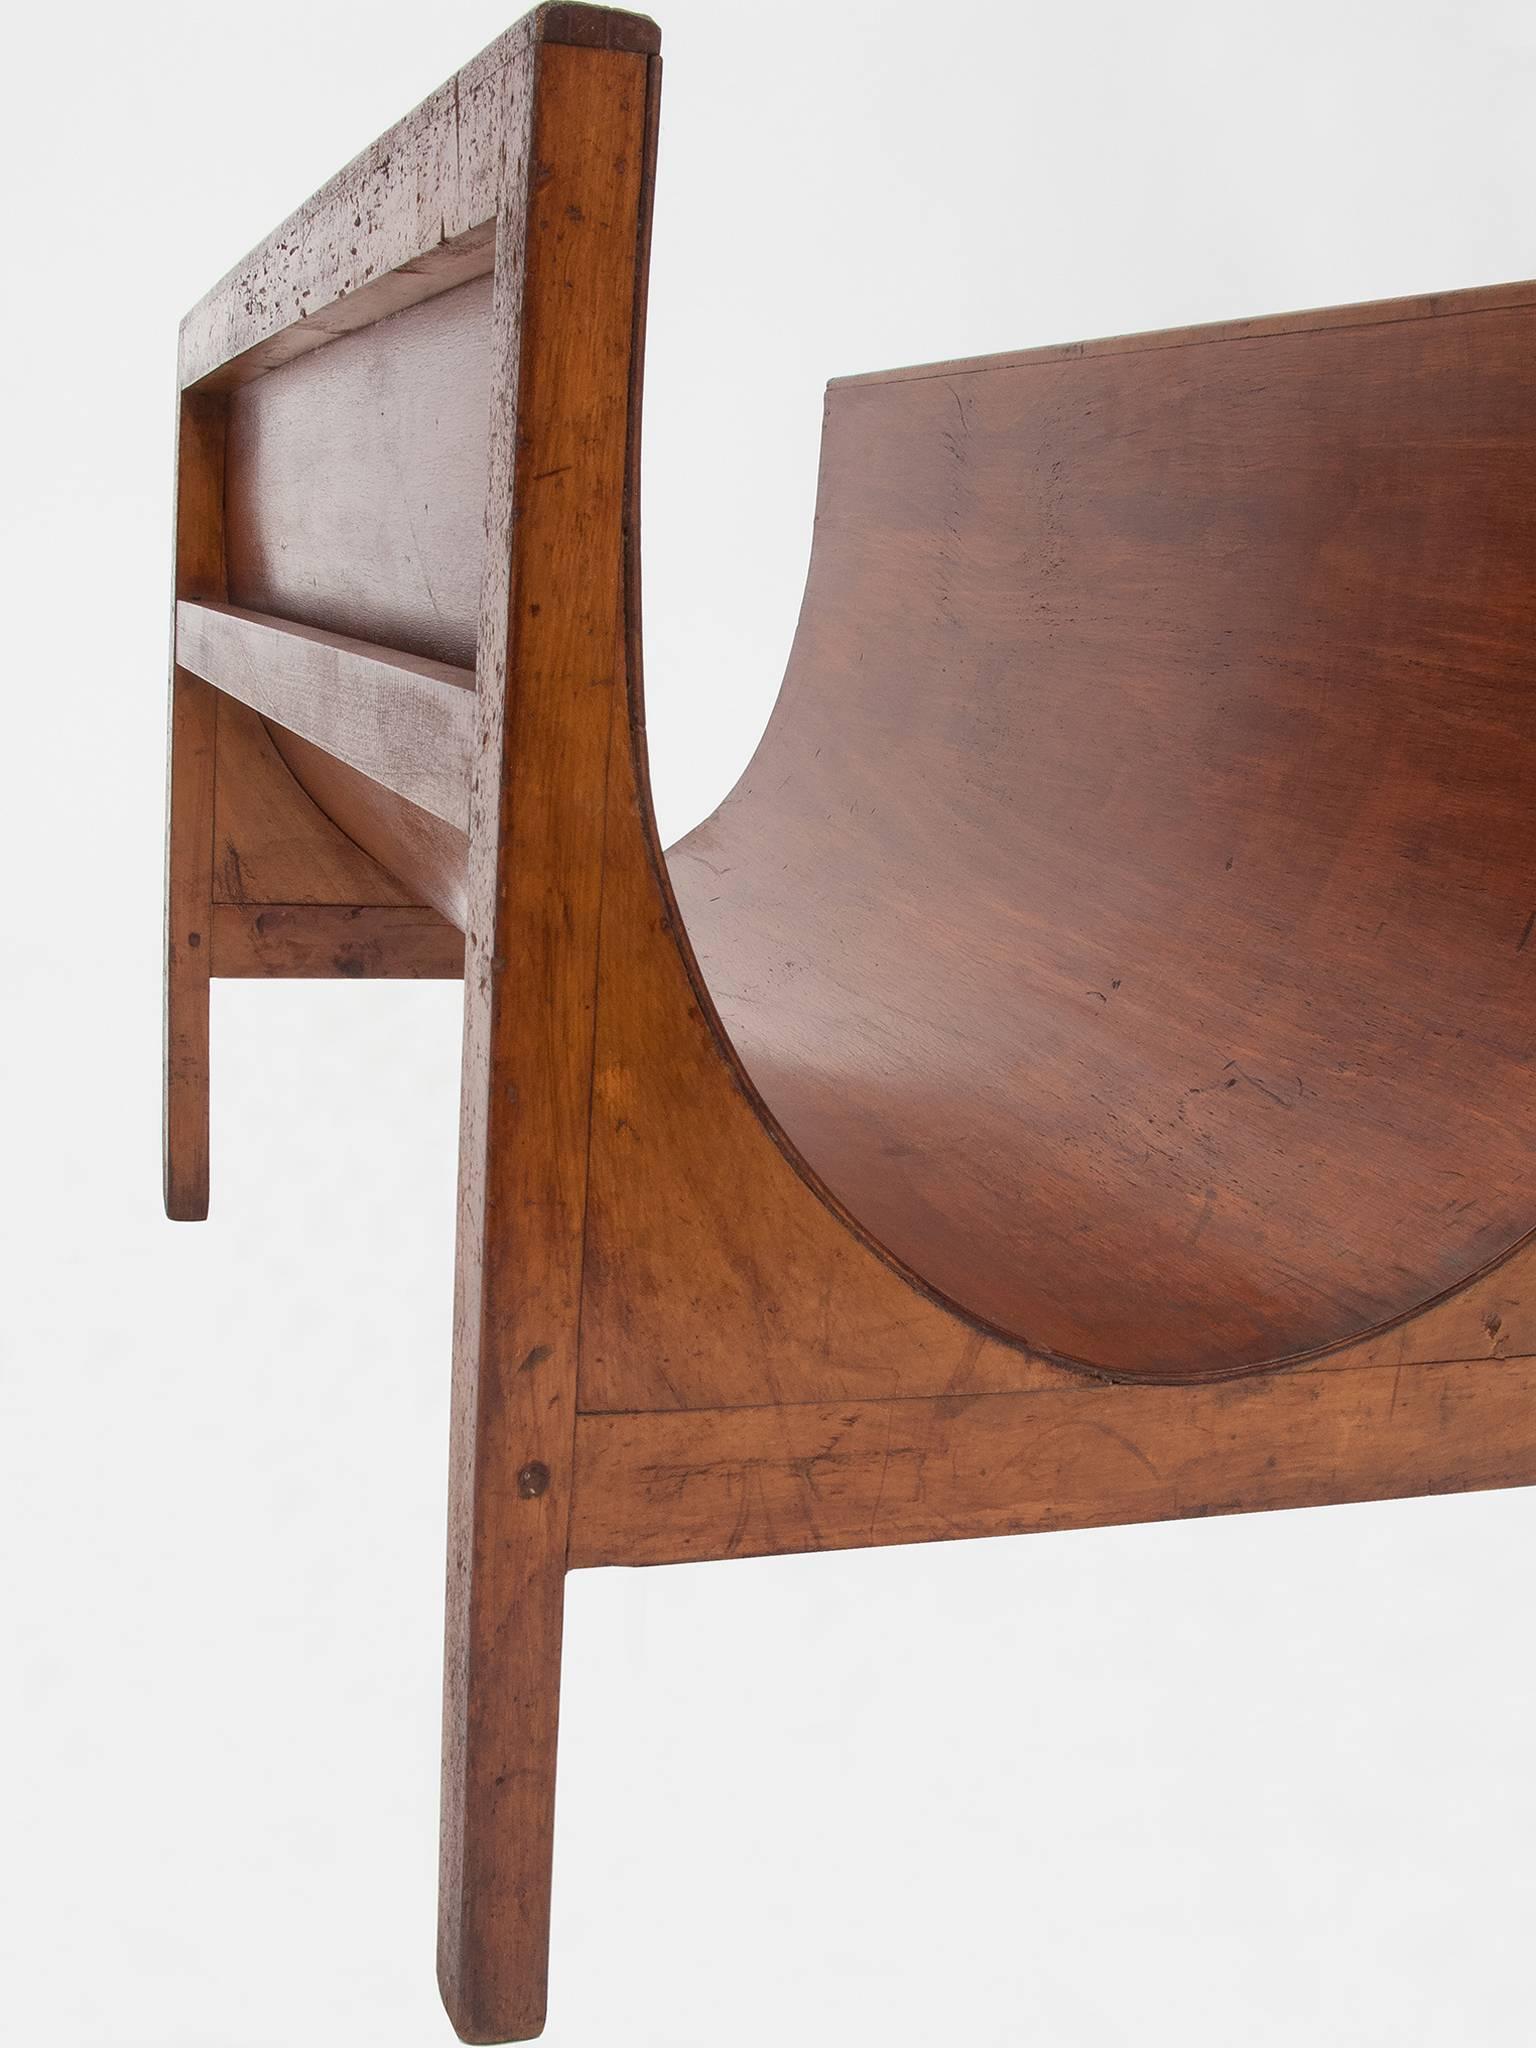 Très inhabituel ce grand porte-revues Déco Autrichien en bois courbé : un design moderne parfait !  Pièce unique.
M/703.
 